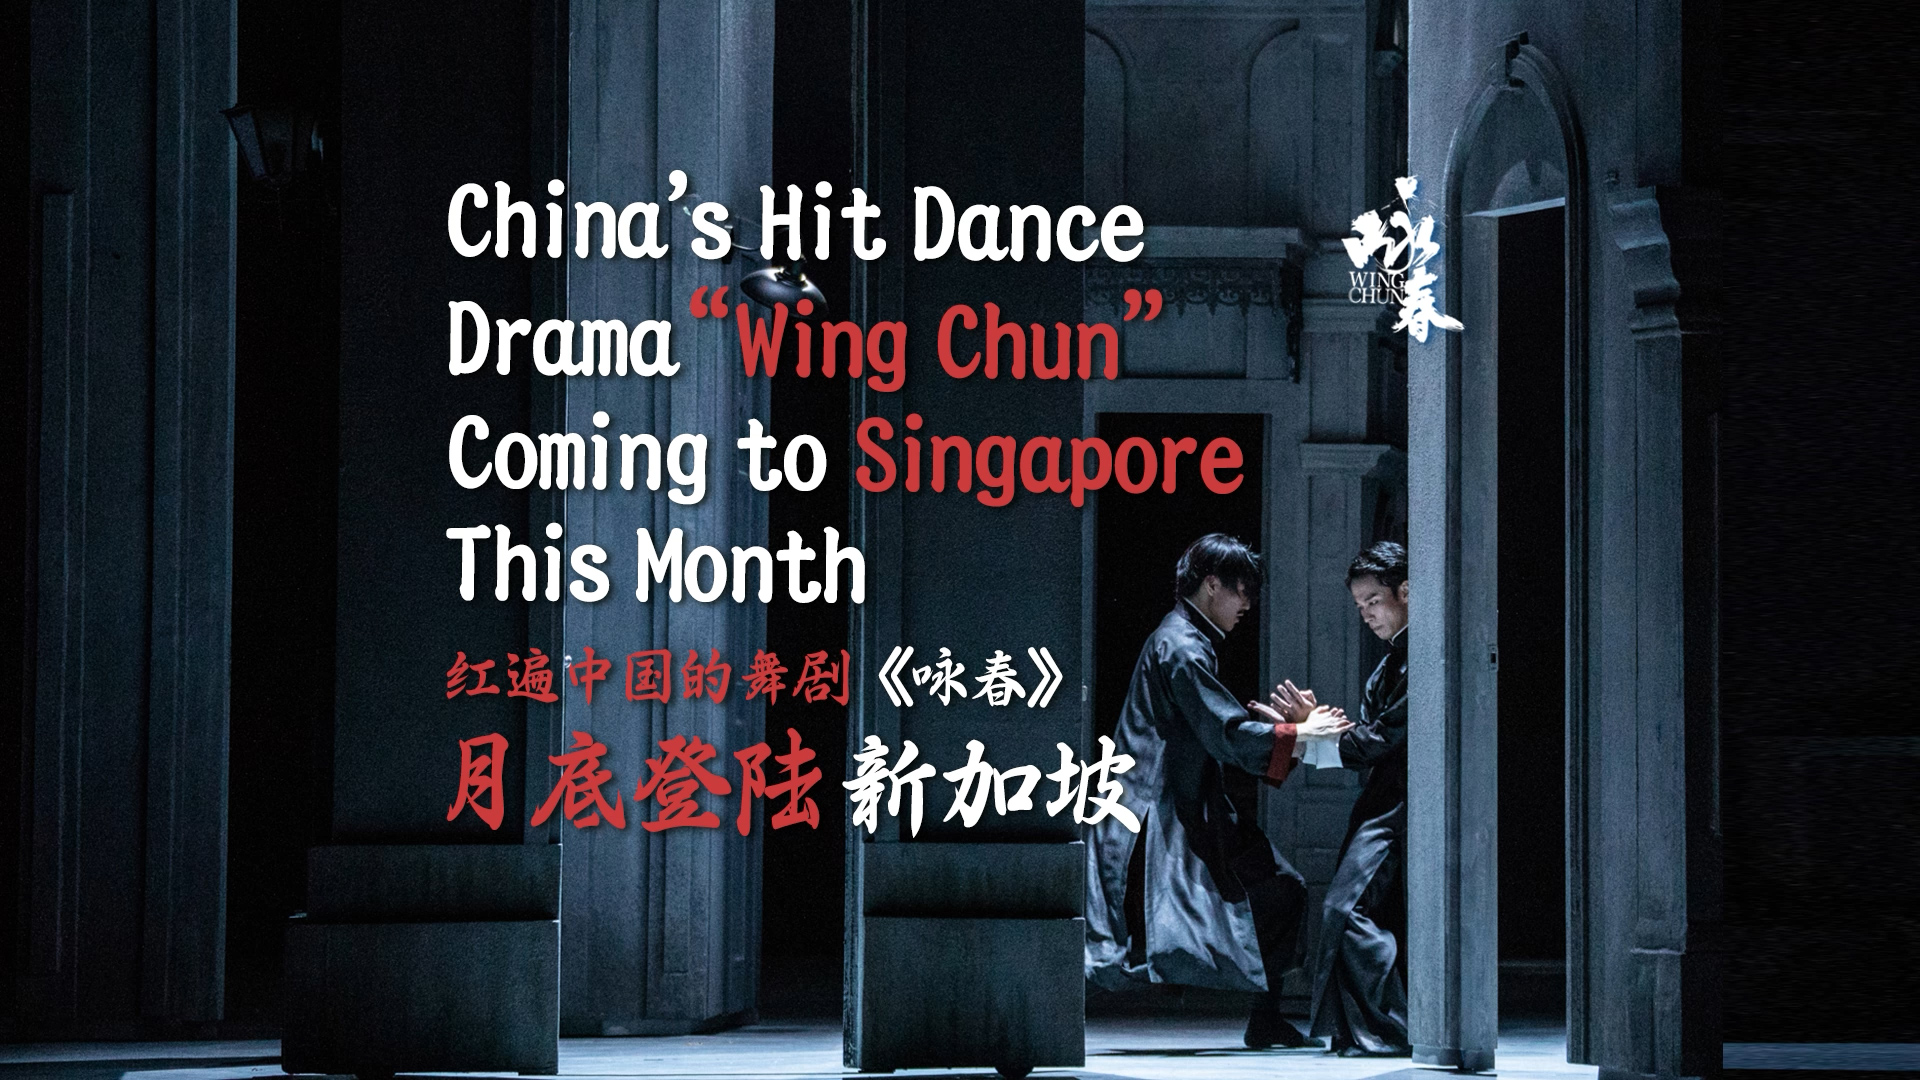 有片丨紅遍中國的舞劇《詠春》月底登陸新加坡